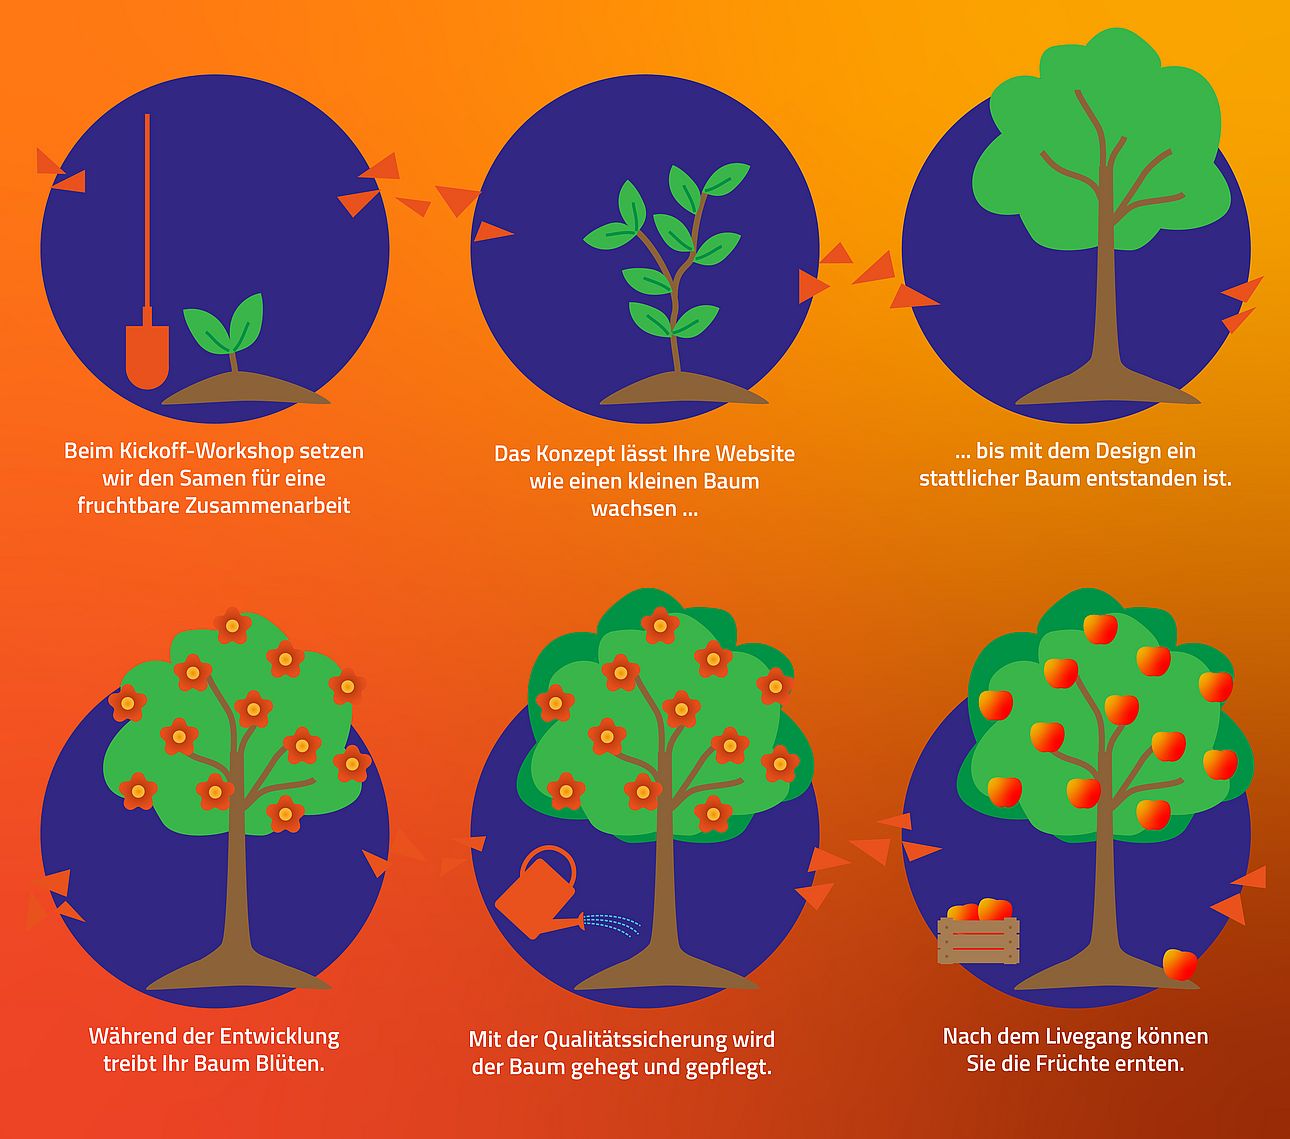 Grafik in orange, blau und grün. Vergleich des Designprozesses mit dem Wachstums eines Baums. Erst wird mit dem Kickoff-Workshop das Bäumchen gepflanzt, nach dem Livegang können vom Kunden die reifen Früchte geernetet werden.